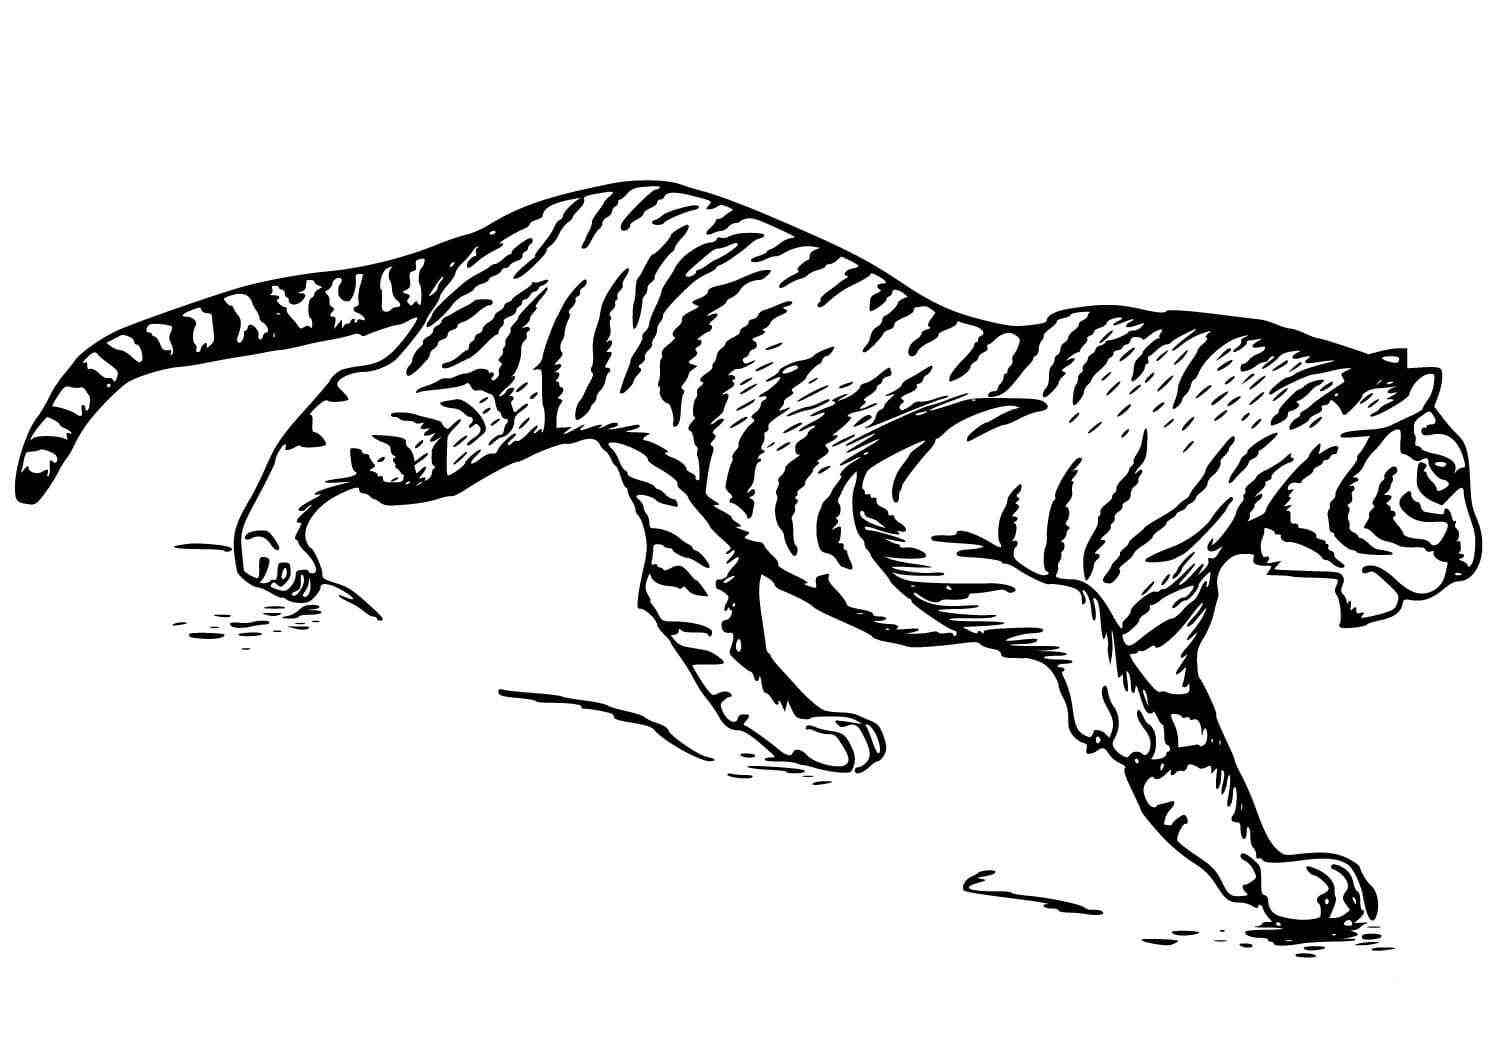 La tigre della Cina meridionale si prepara ad attaccare la preda della tigre